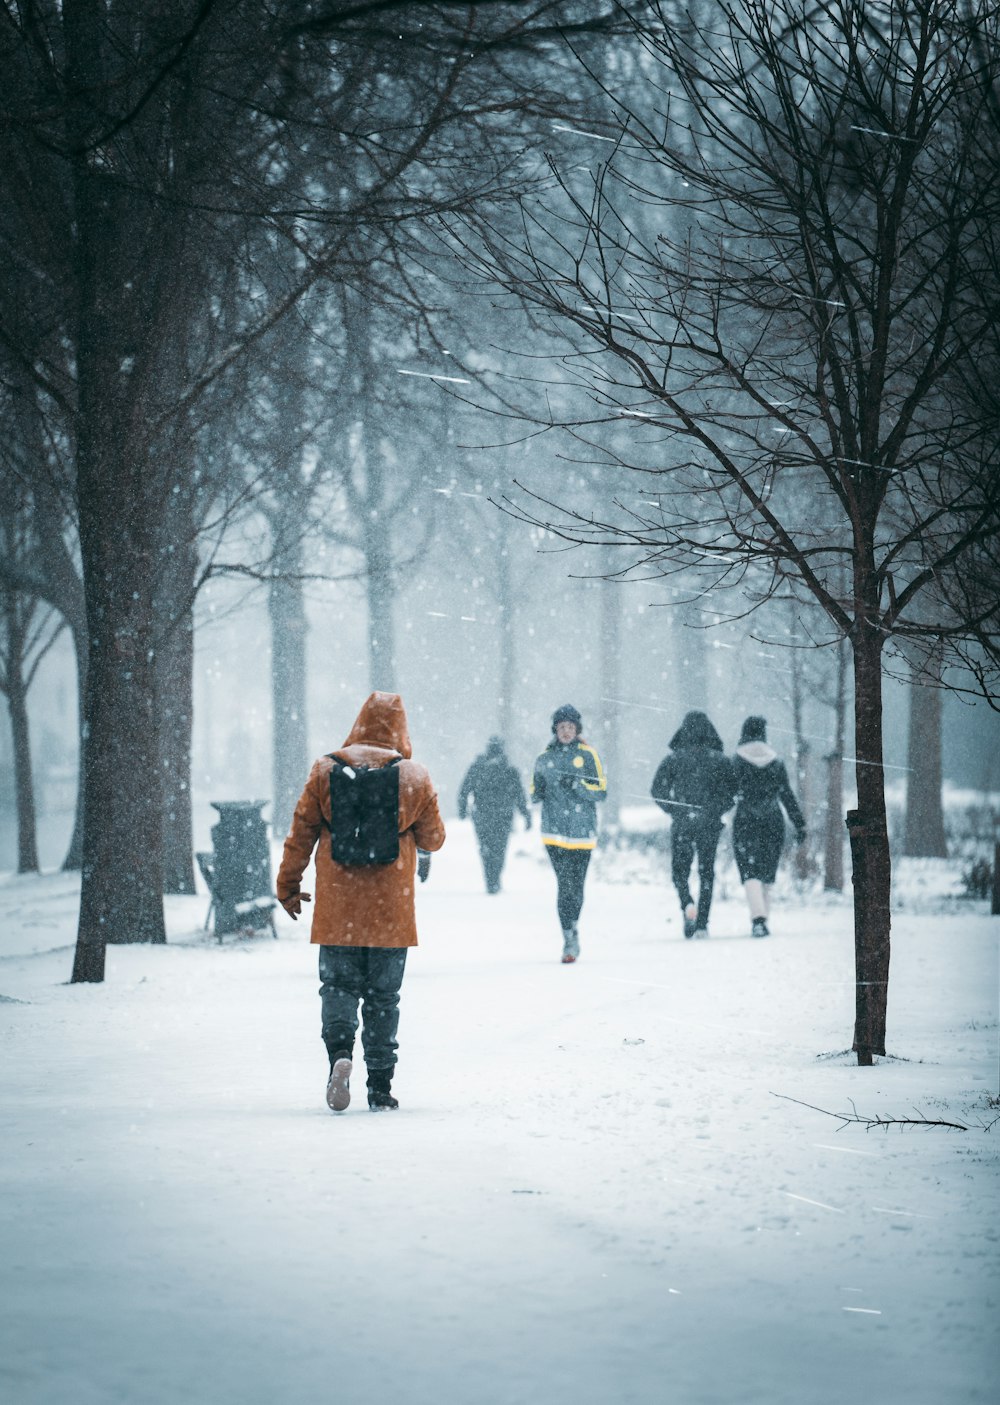 Frau im braunen Mantel steht auf schneebedecktem Boden